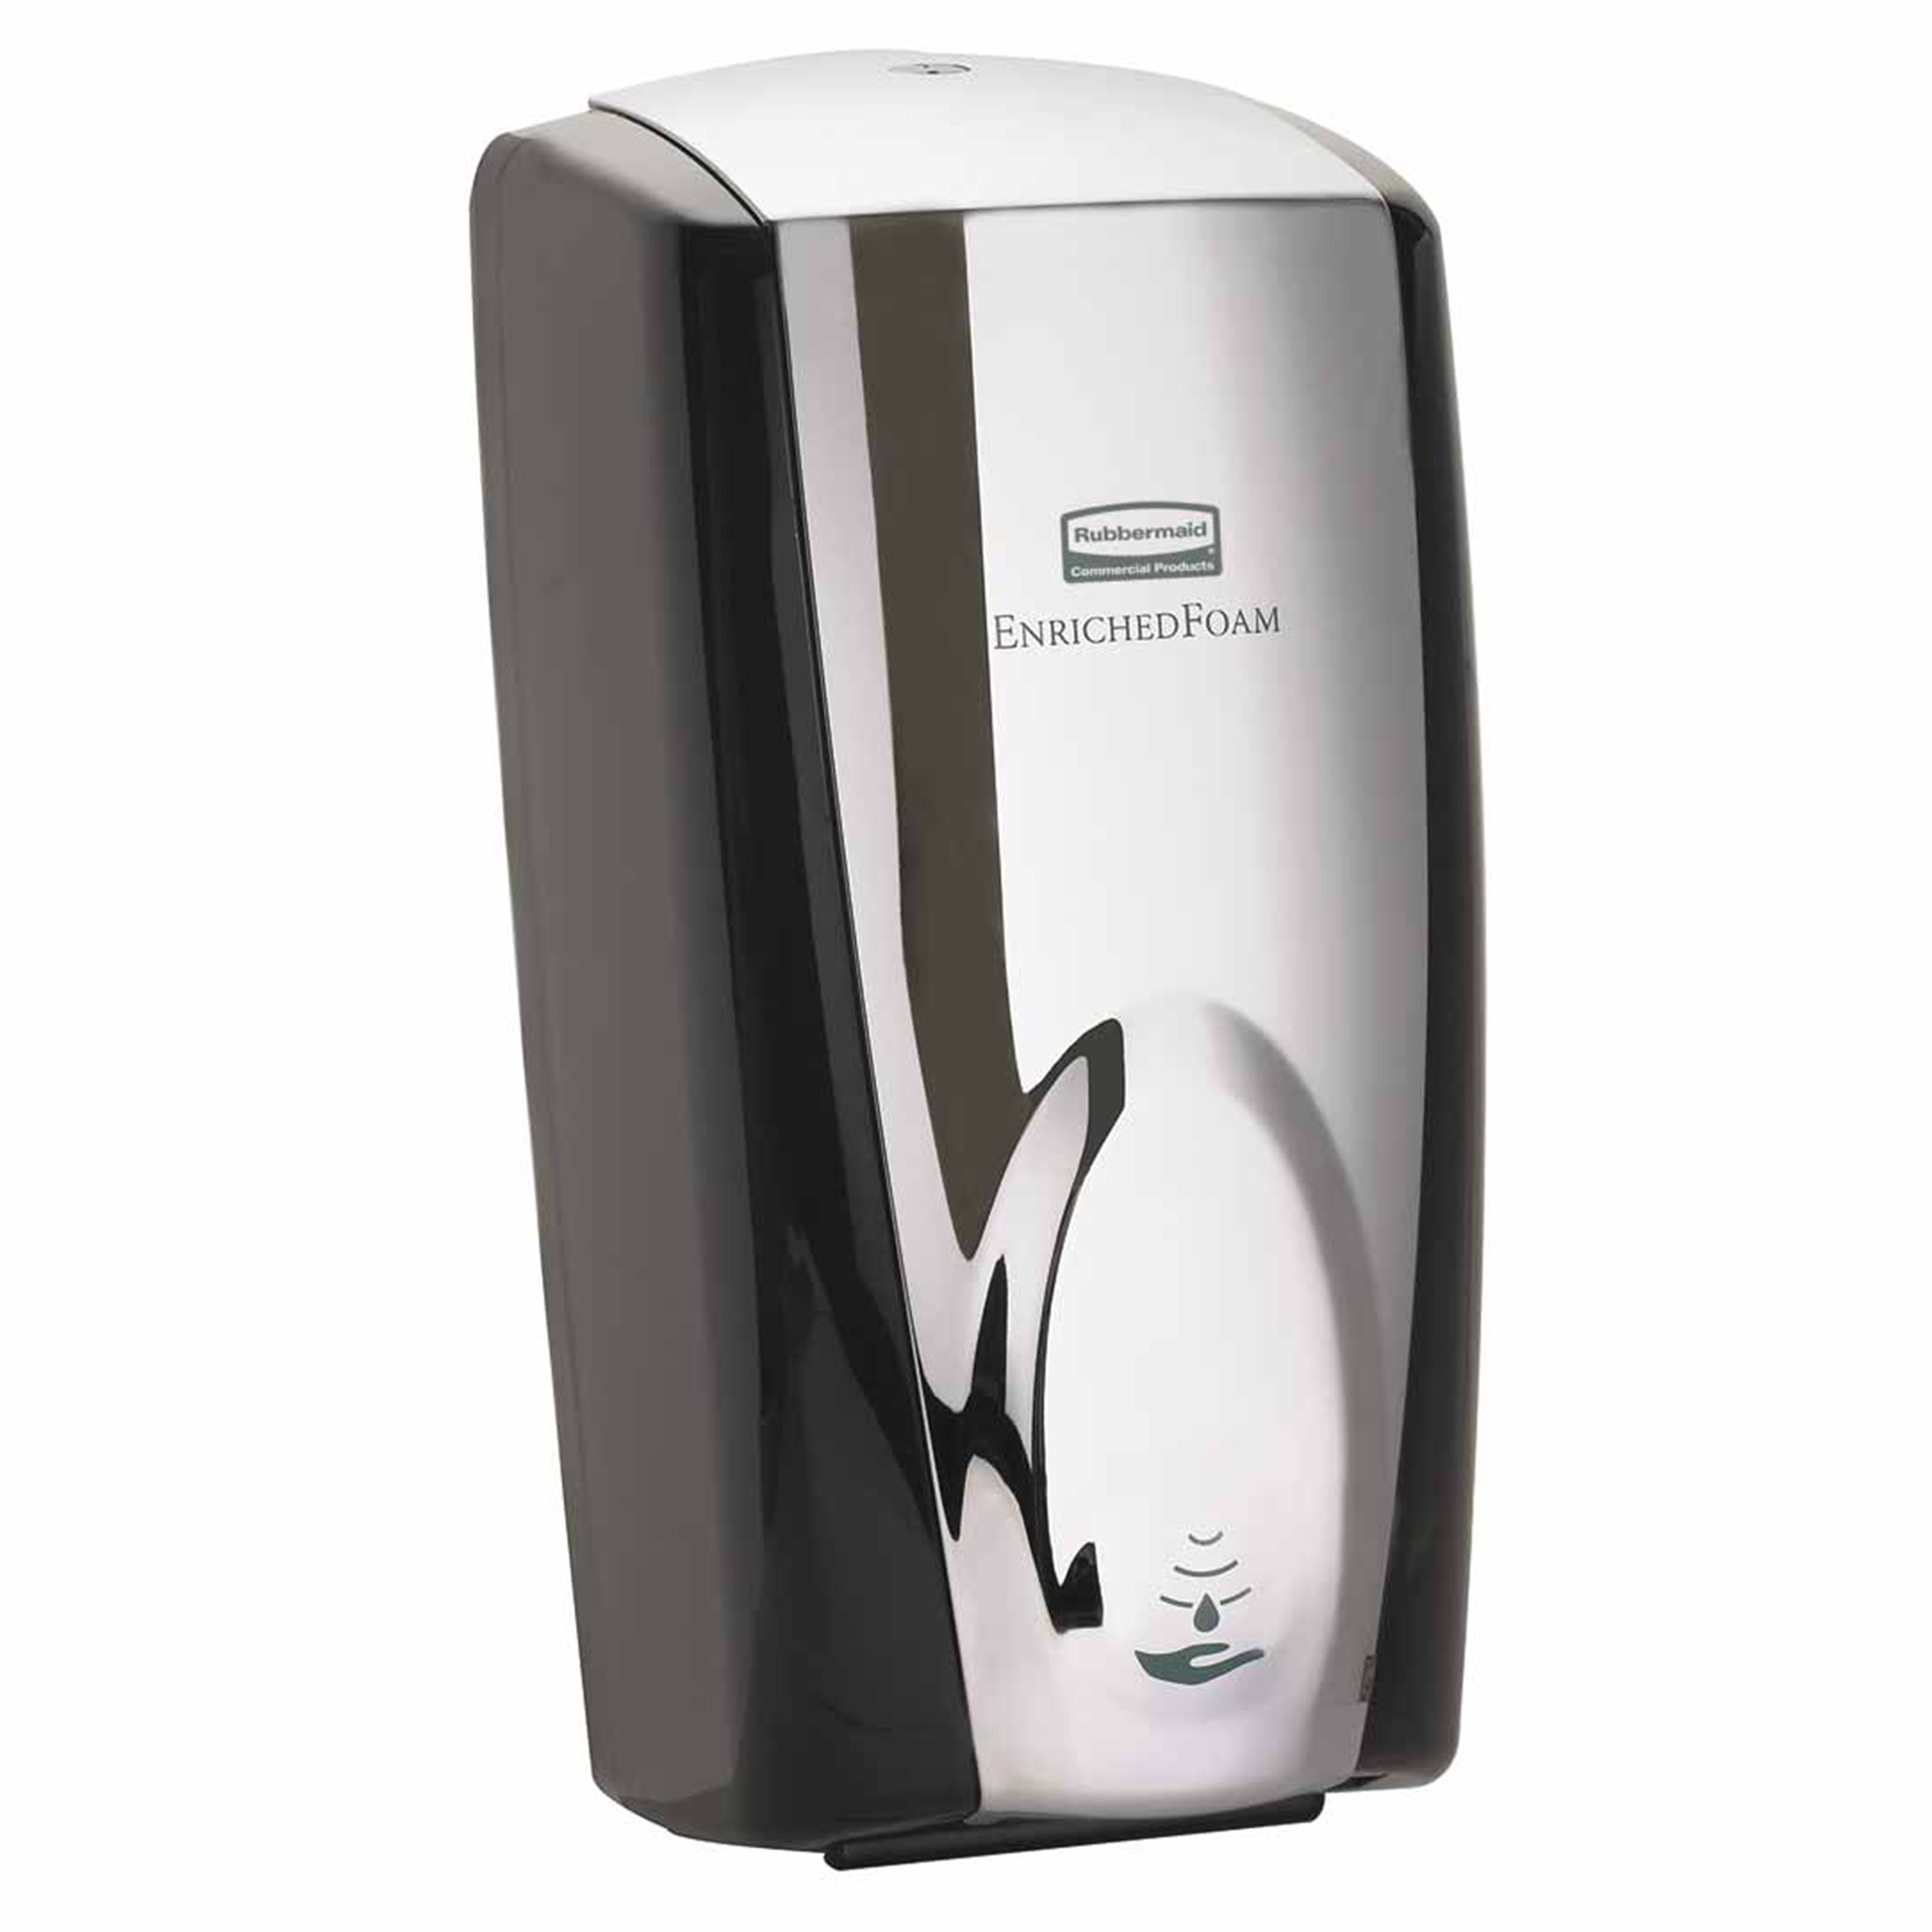 Rubbermaid FG750411 jabonera dispensadora de jabón en espuma Foam TC automática, color negro y cromo